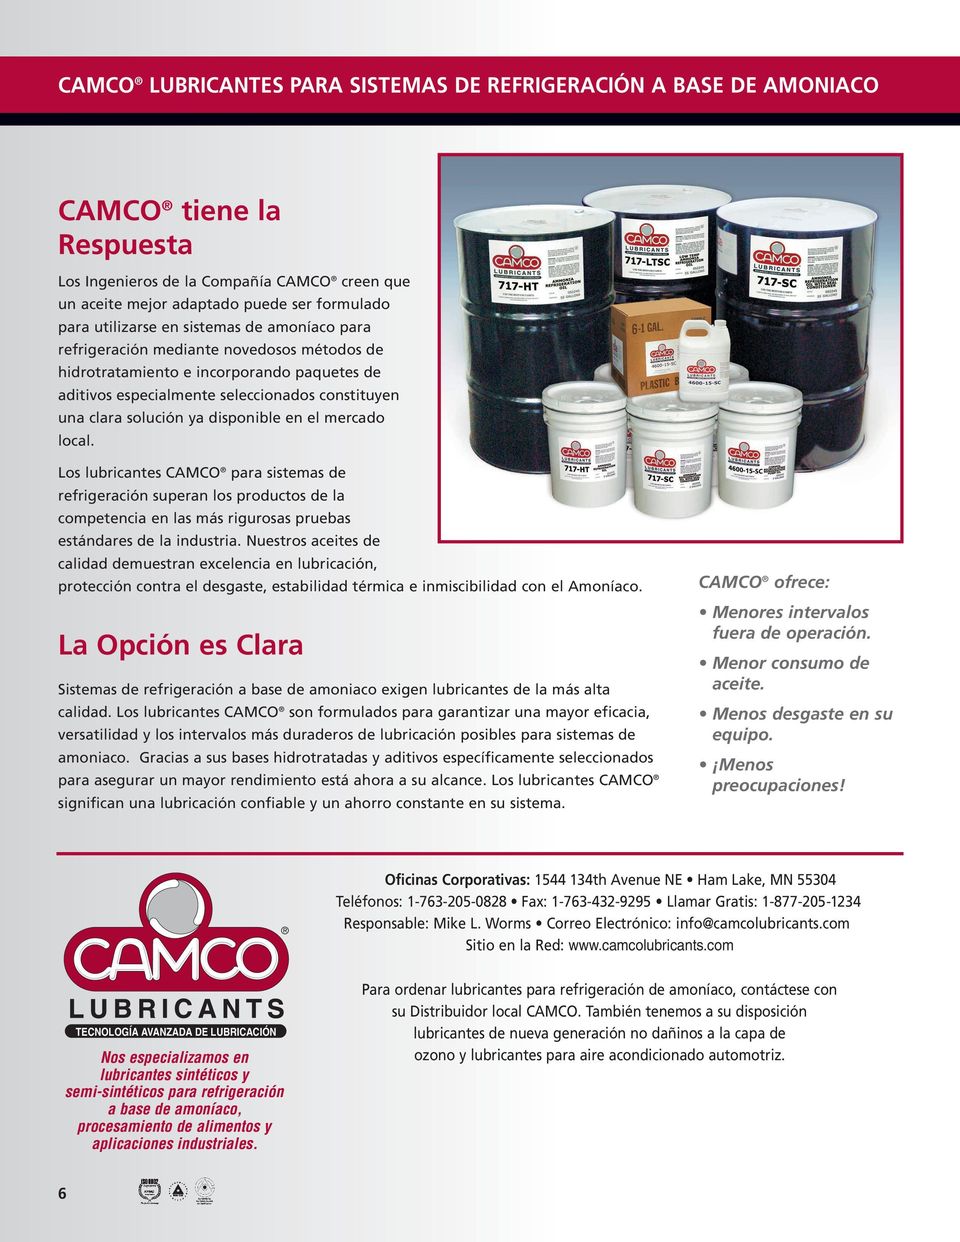 Los lubricantes CAMCO para sistemas de refrigeración superan los productos de la competencia en las más rigurosas pruebas estándares de la industria.